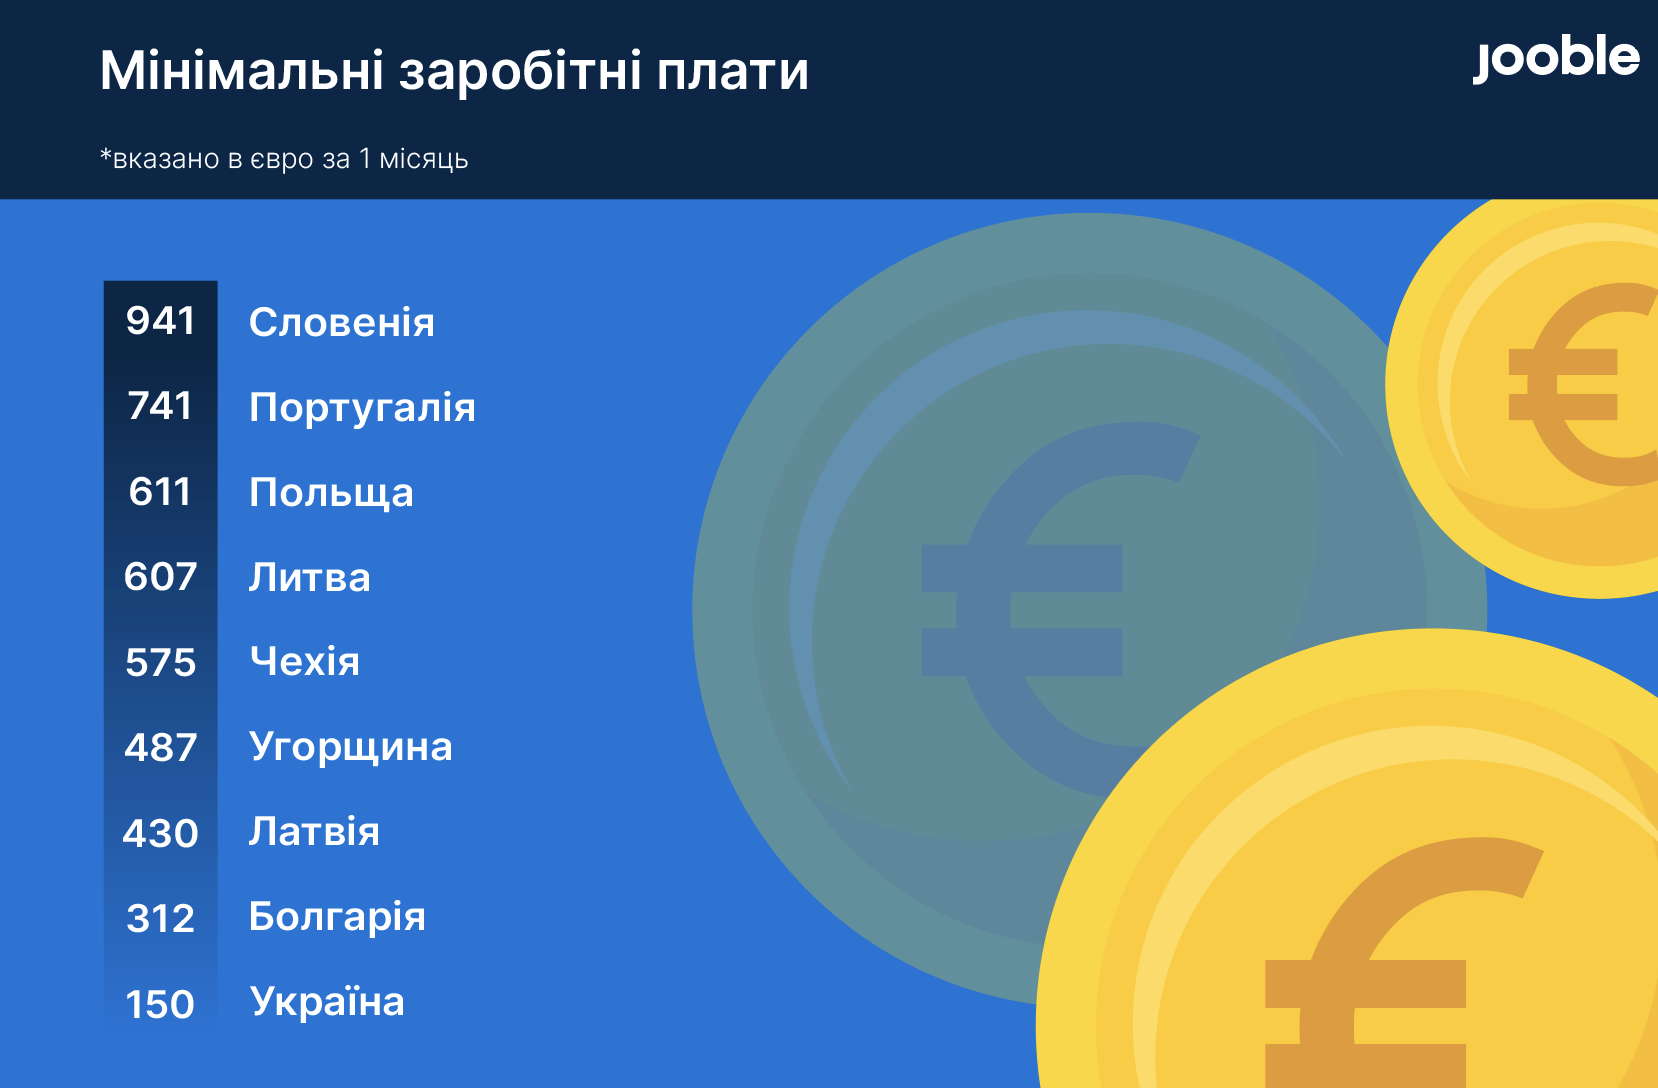 В Украине на минимальную зарплату (150 евро) ищут грузчиков, промоутеров, дворников и подсобников